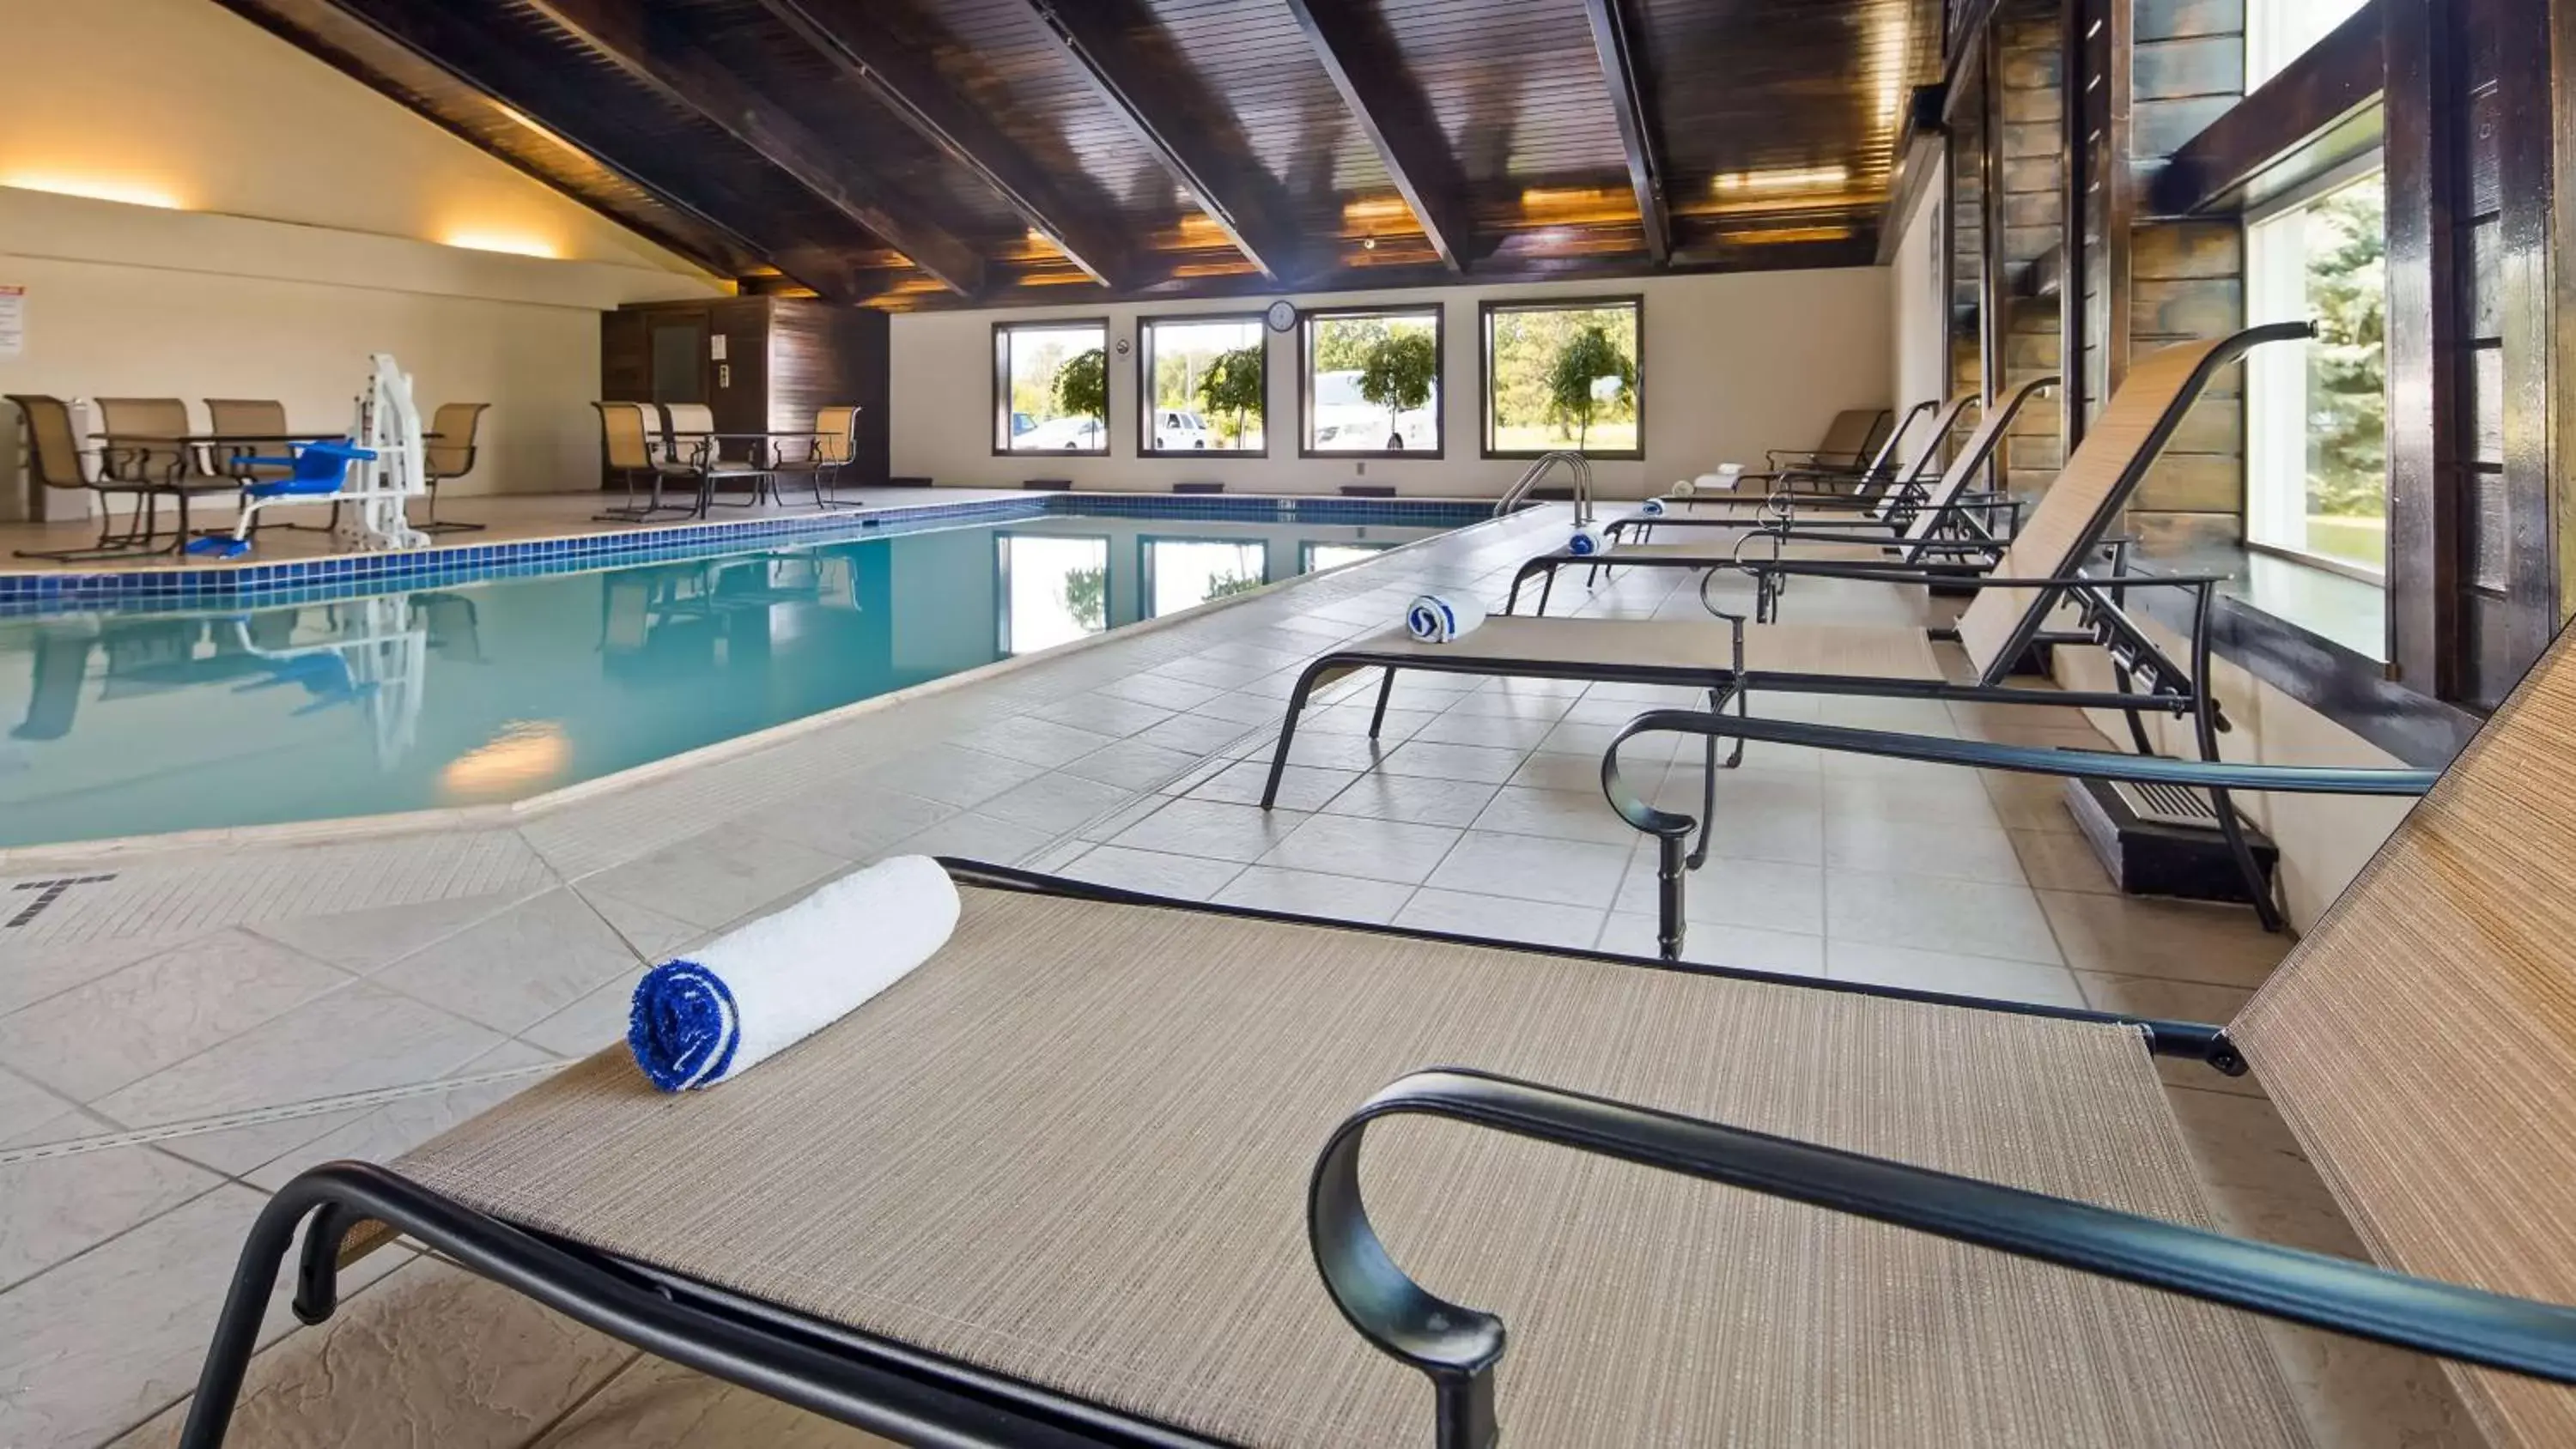 On site, Swimming Pool in Best Western Plus Flint Airport Inn & Suites